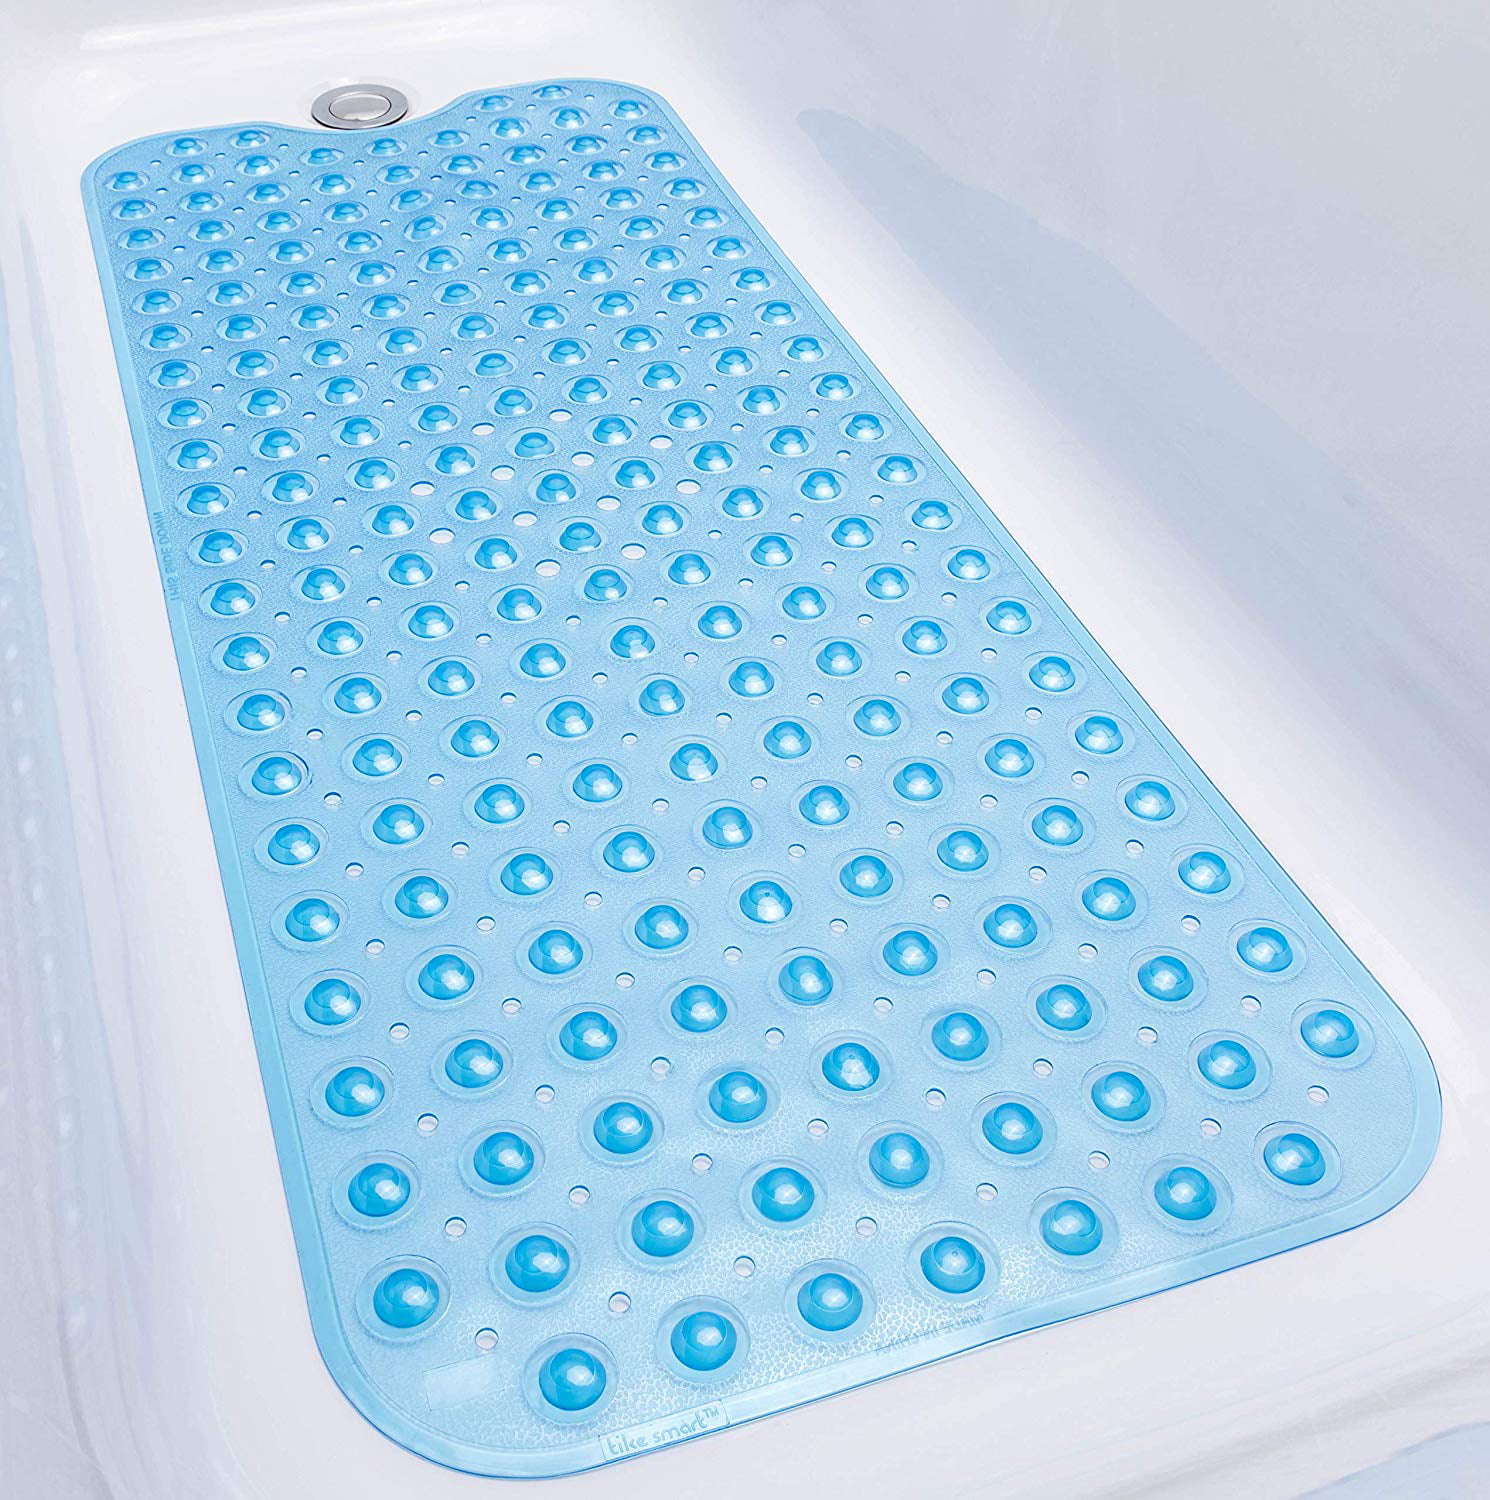 Non Slip Shower Blue/Transparent Bubble Bath Tub Mat Antimicrobial Protection US 